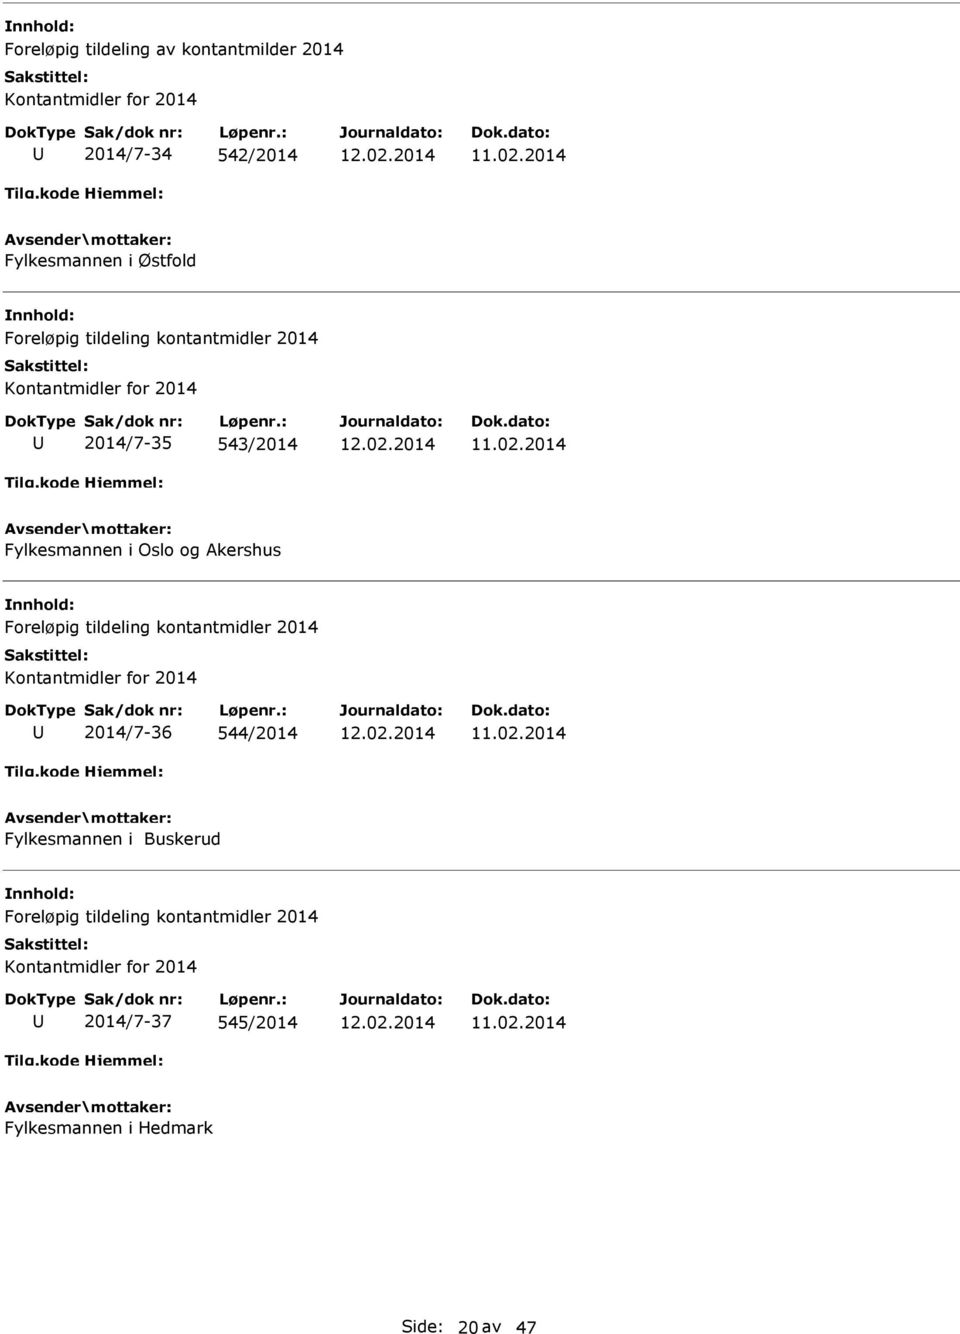 2014 Fylkesmannen i Oslo og kershus Foreløpig tildeling kontantmidler 2014 Kontantmidler for 2014 2014/7-36 544/2014 12.